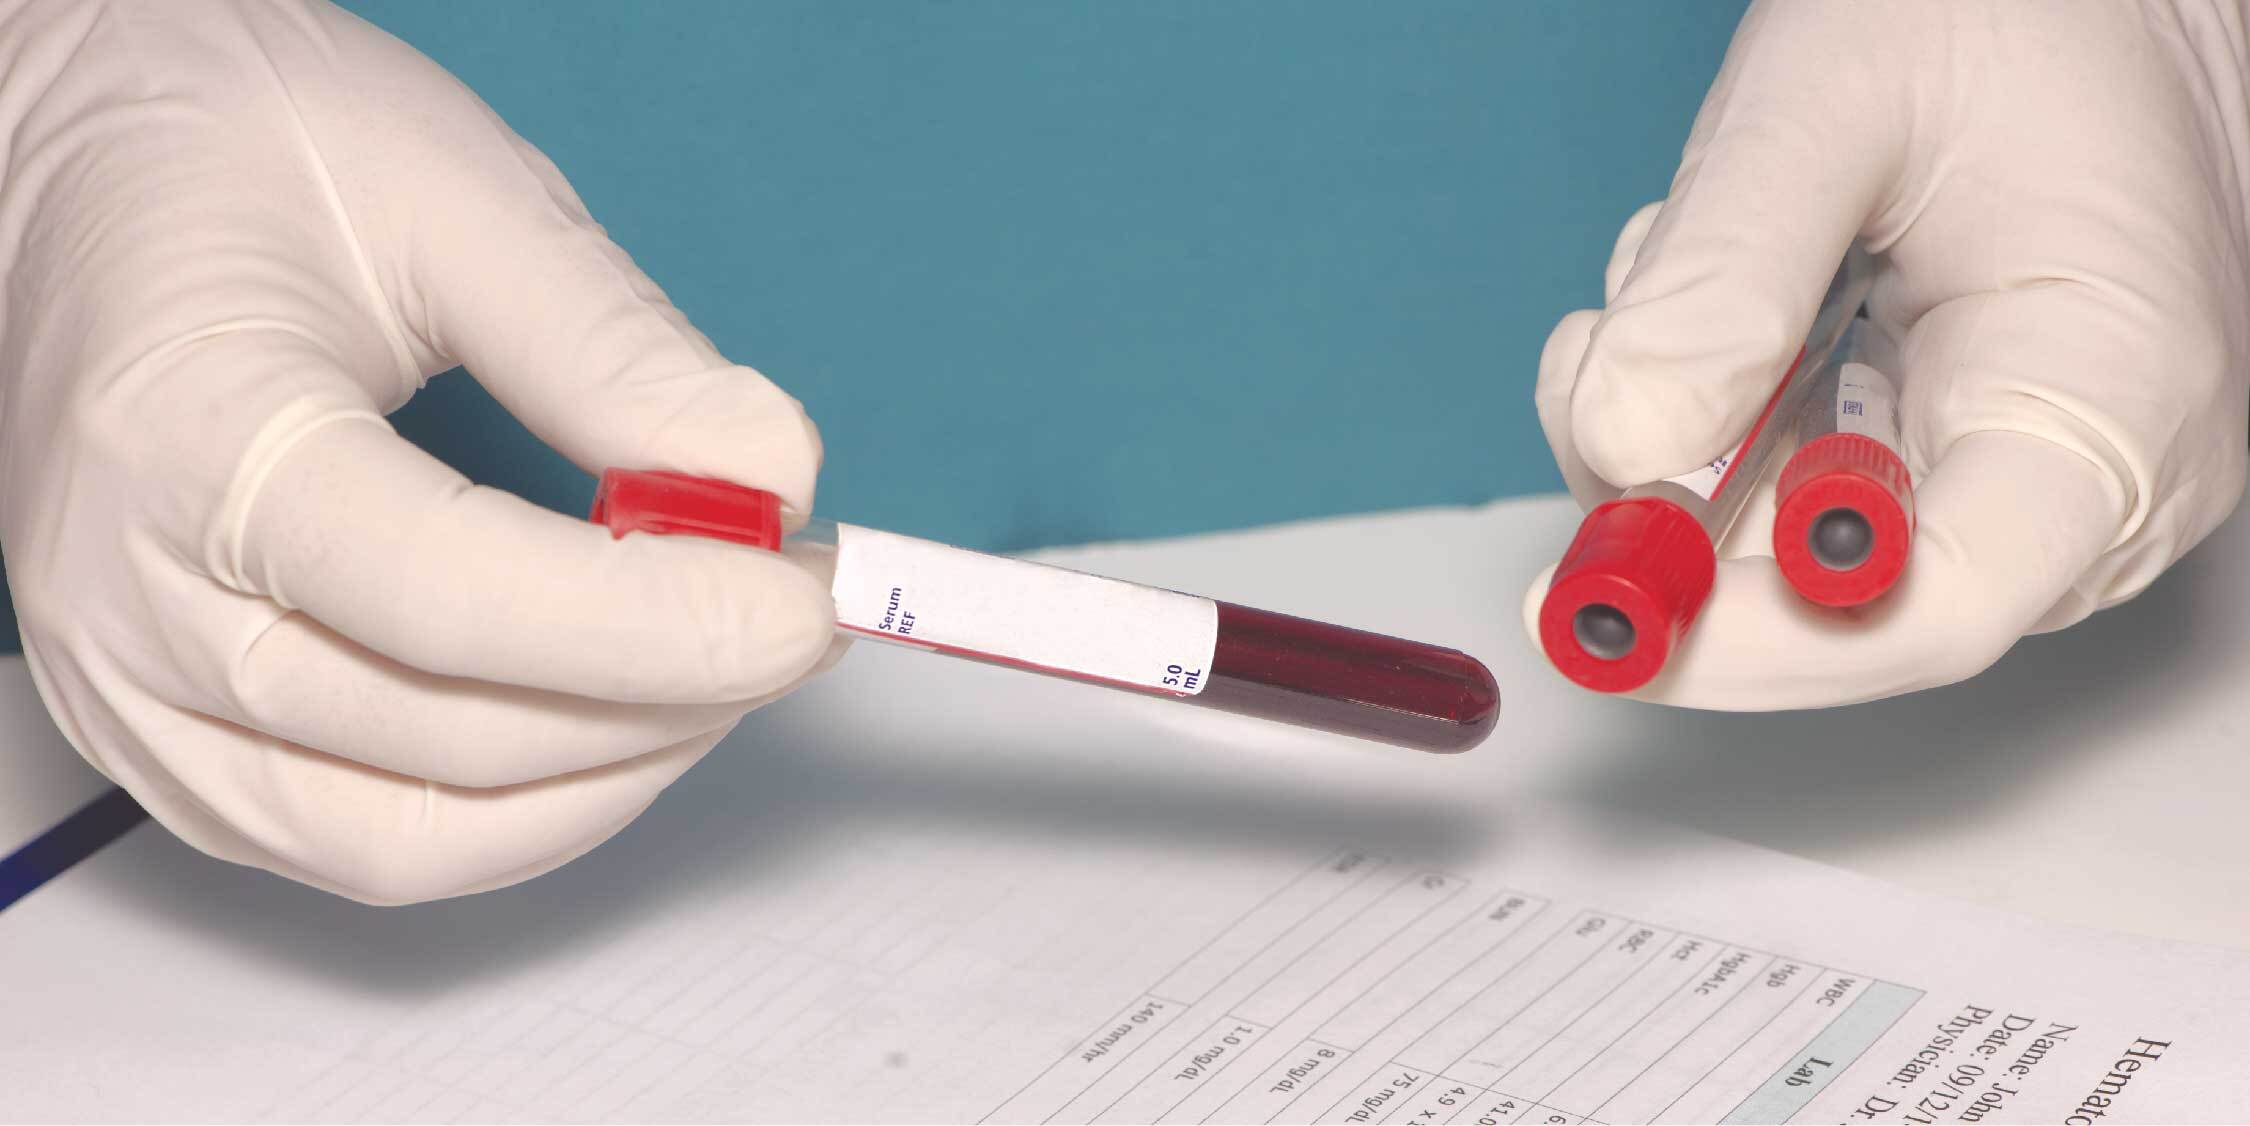 Маркеры вич гепатит. Тестирование крови. Взятие крови на ВИЧ гепатиты. Исследование крови на ВИЧ картинками.